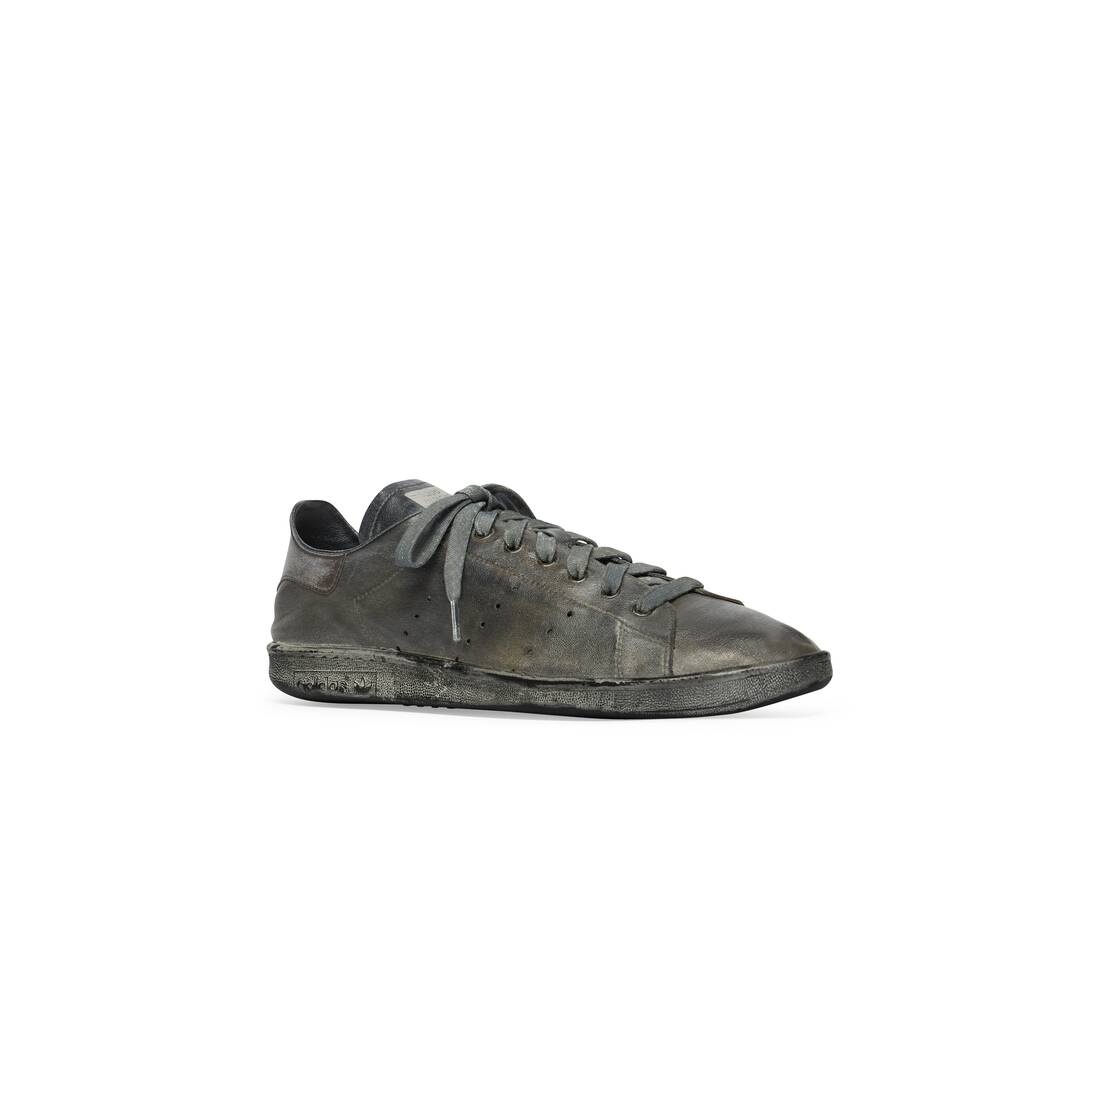 Men's Balenciaga / Adidas Stan Smith Worn-out Sneaker in Black - 2